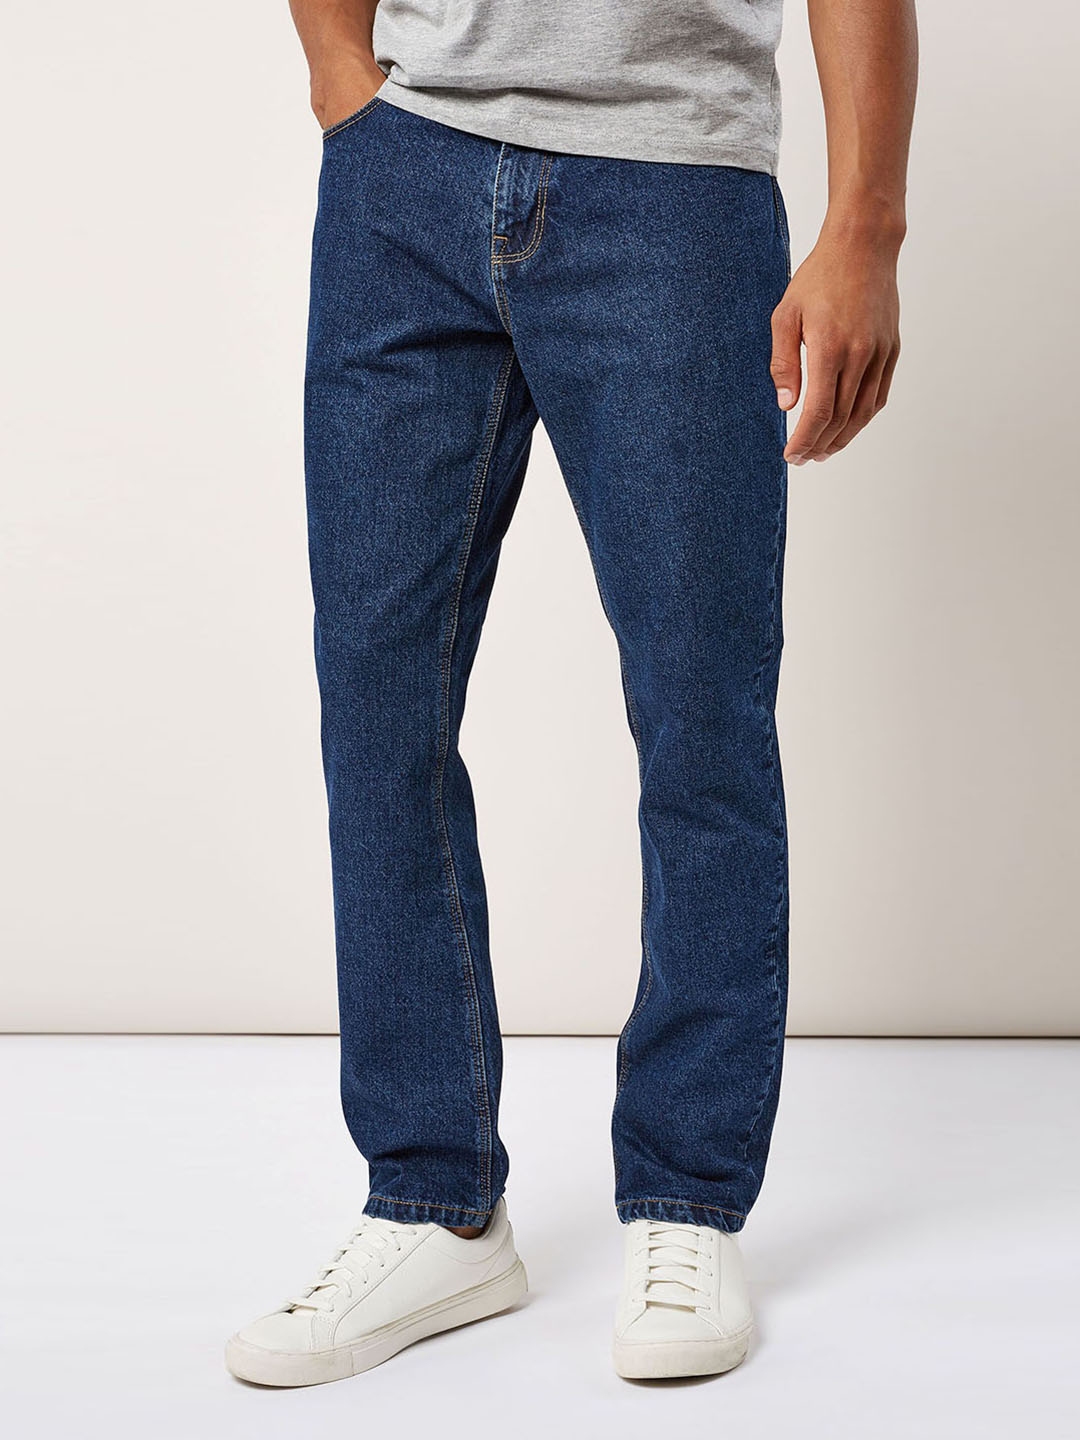 Buy Next Men Blue Slim Fit Mid Rise Clean Look Jeans - Jeans for Men ...